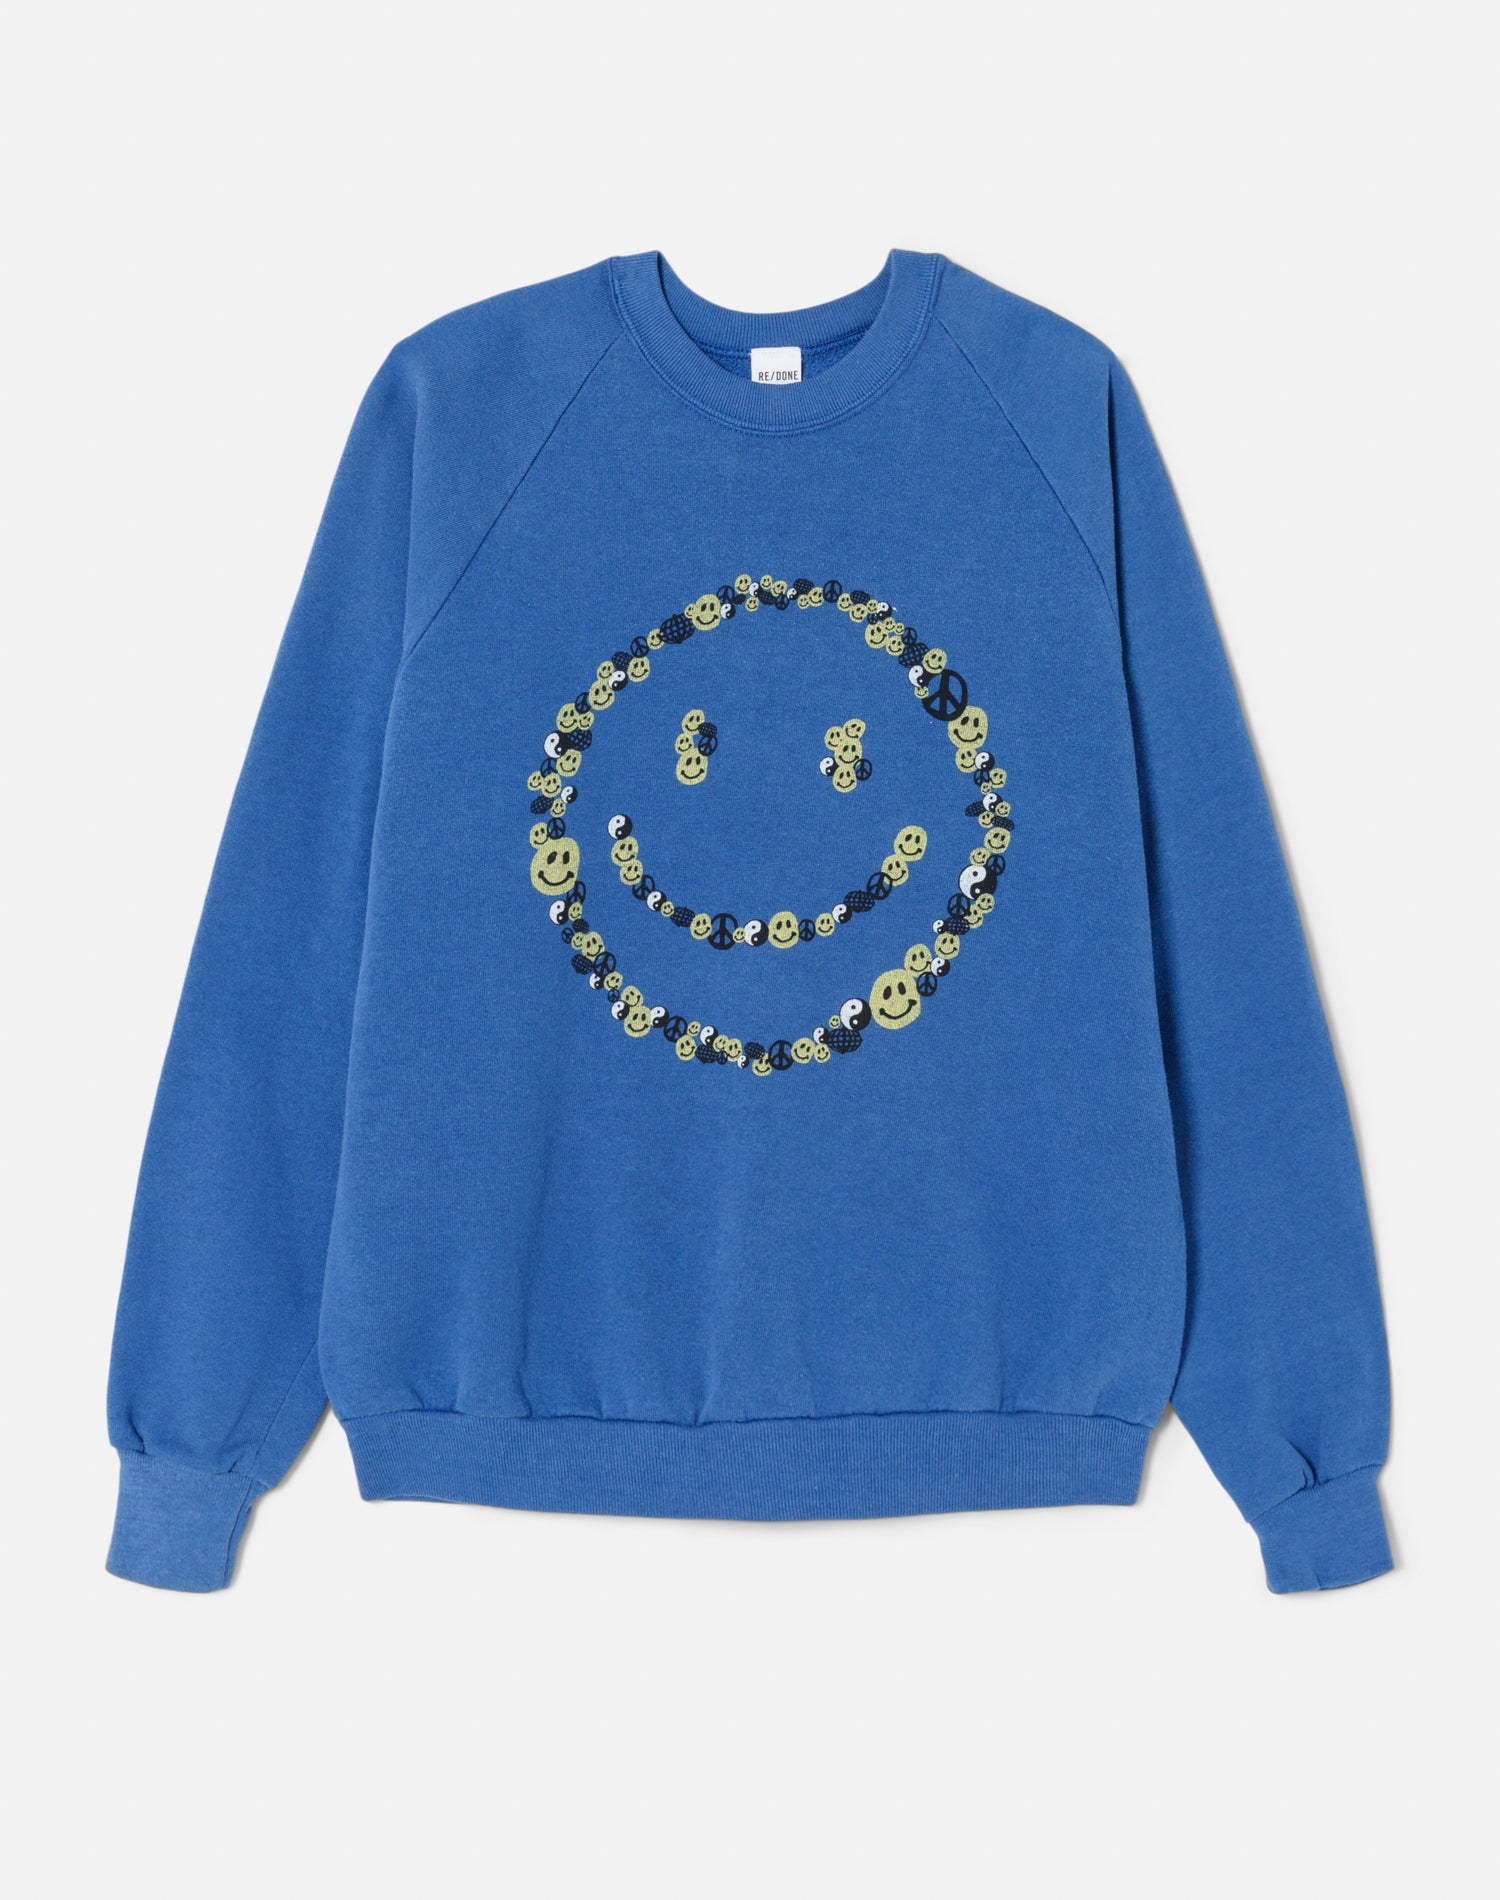 Upcycled "Smile" Sweatshirt - Assorted